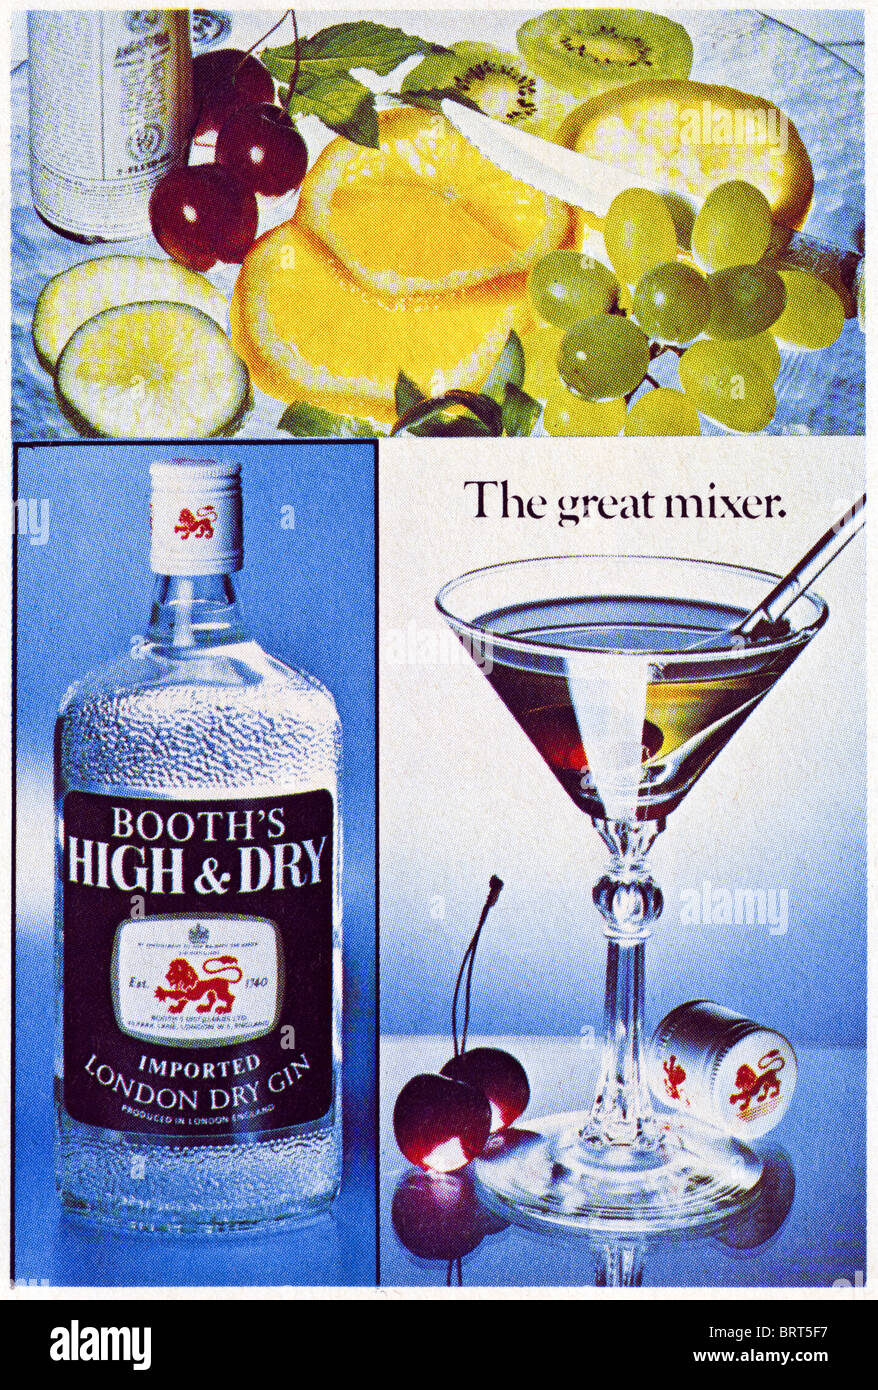 Booth's London dry gin annuncio in Britannia Airways magazine pubblicità duty free in vendita circa 1977 Foto Stock